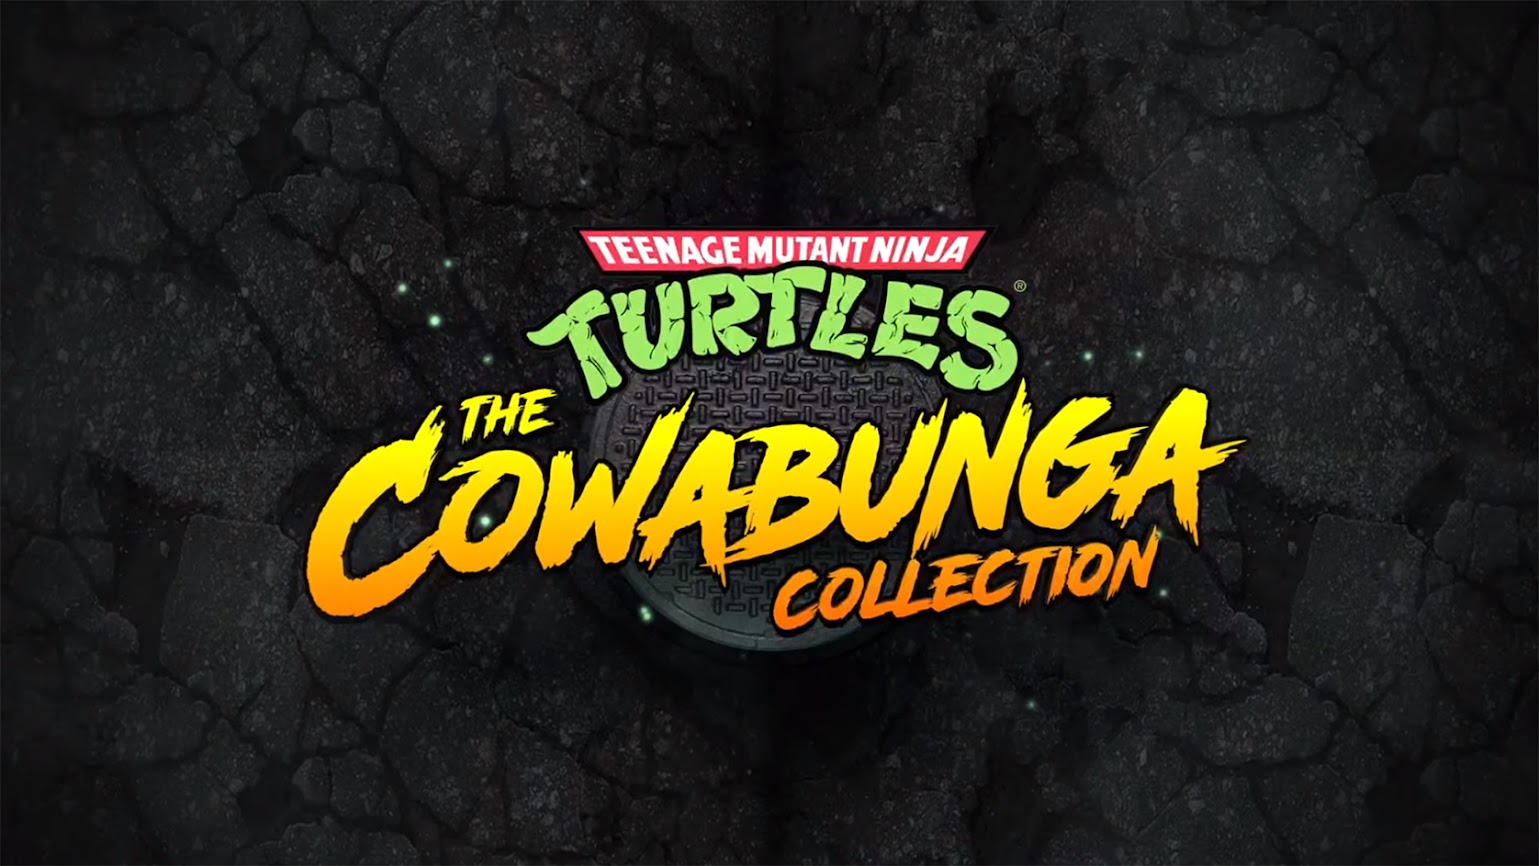 Teenage Mutant Ninja Turtles: The Cowabunga Revealed Collection